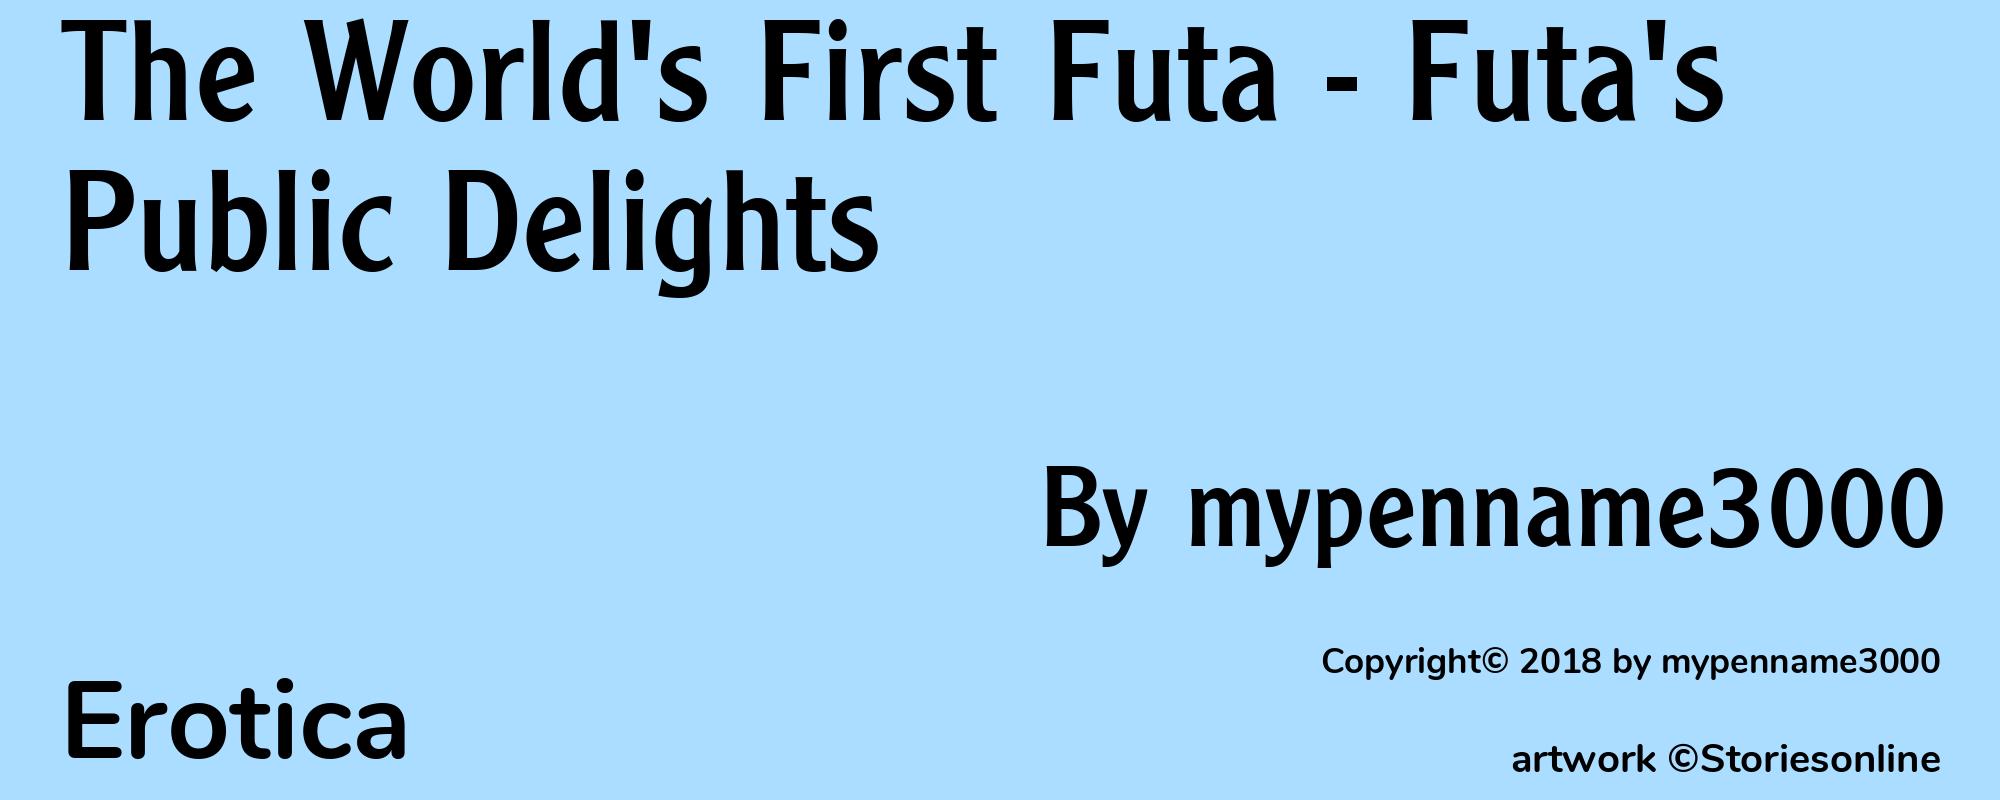 The World's First Futa - Futa's Public Delights - Cover